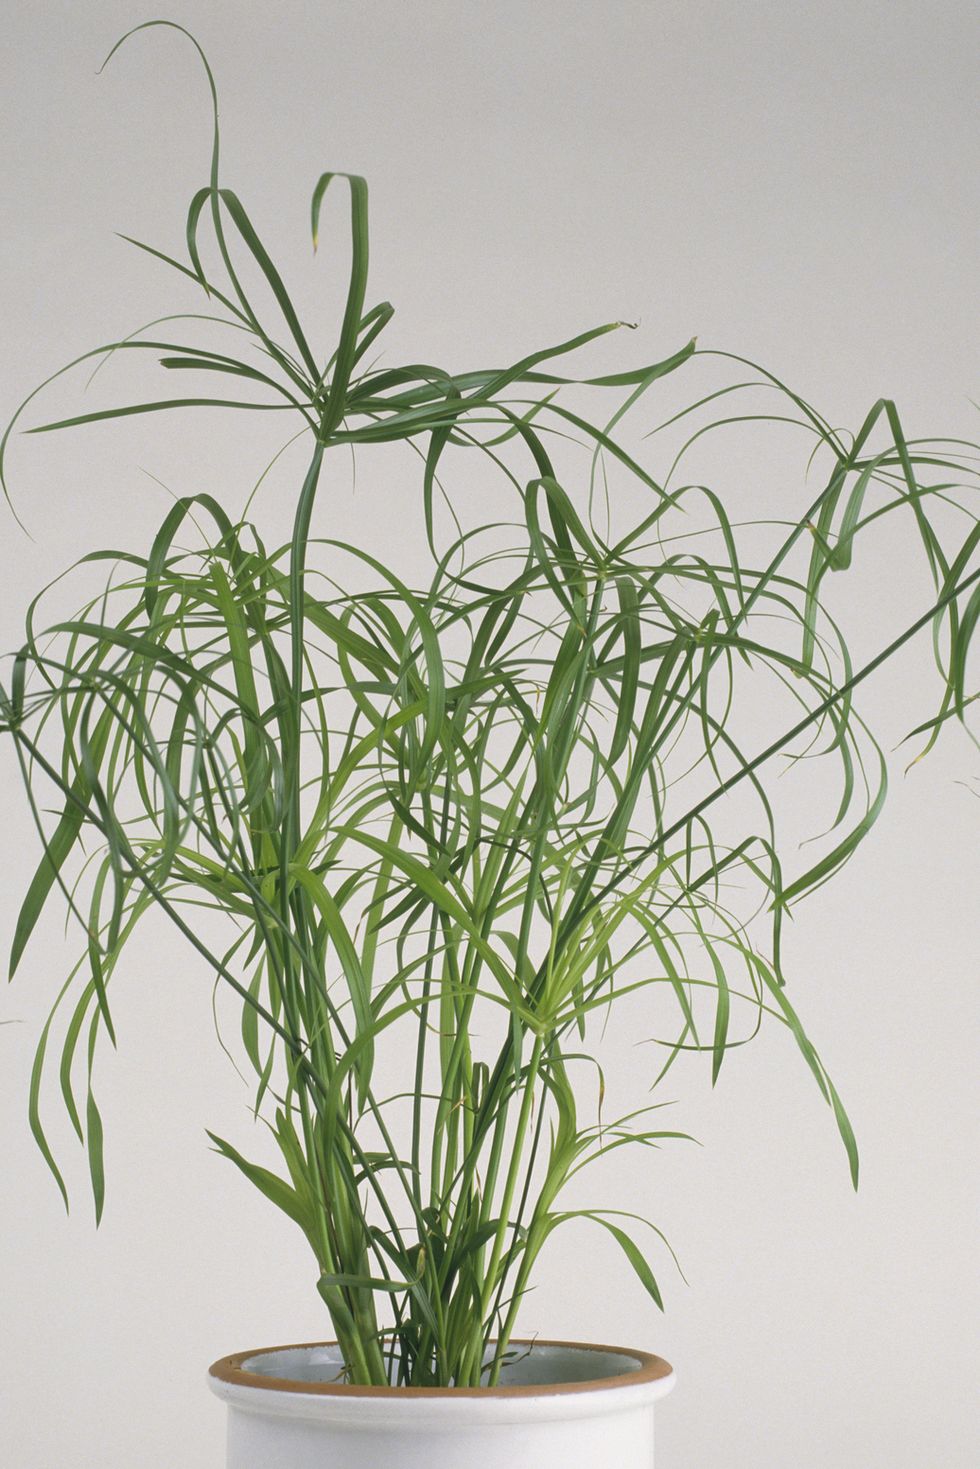 Cyperus alternifolius 'Gracilis' (Umbrella plant) in white ceramic plant pot